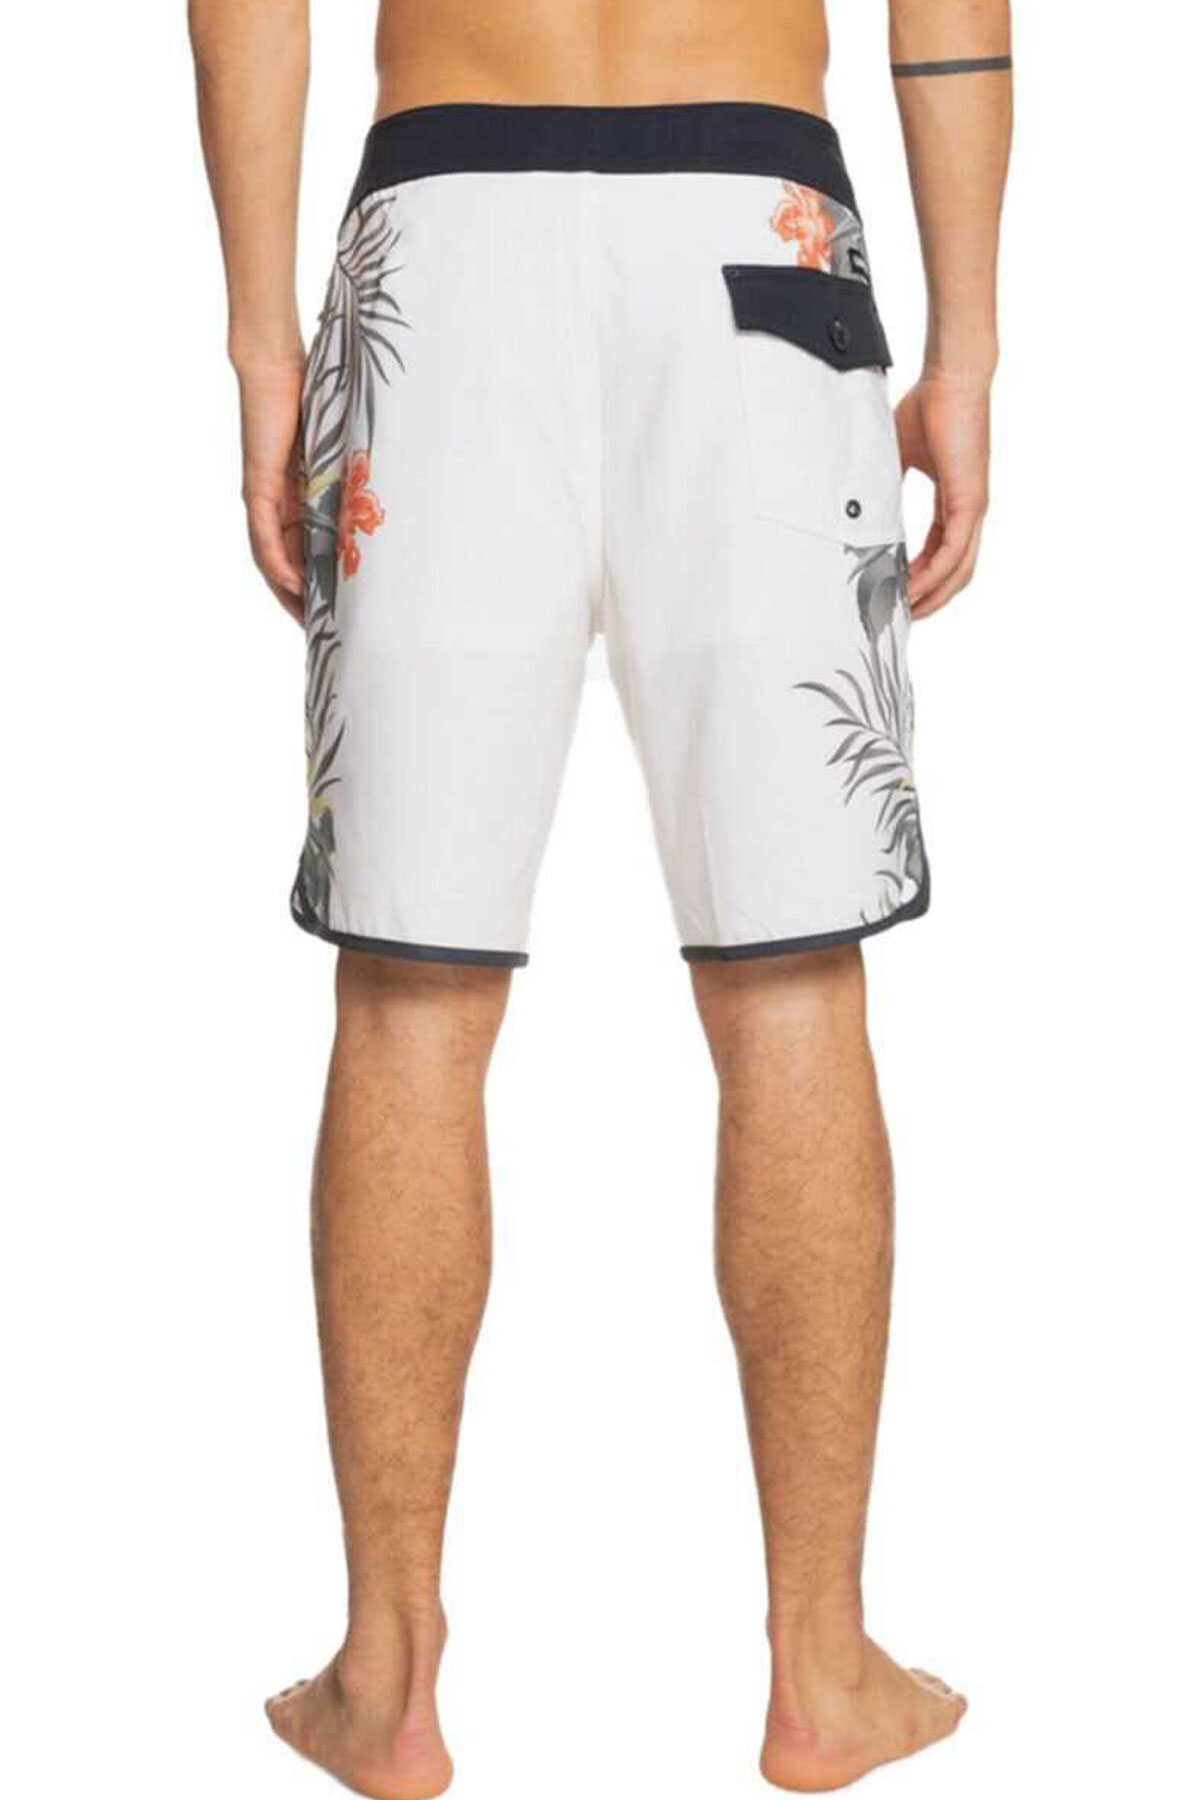 شلوارک برمودا ساحلی طرح دار بندی مردانه سفید برند Quiksilver 